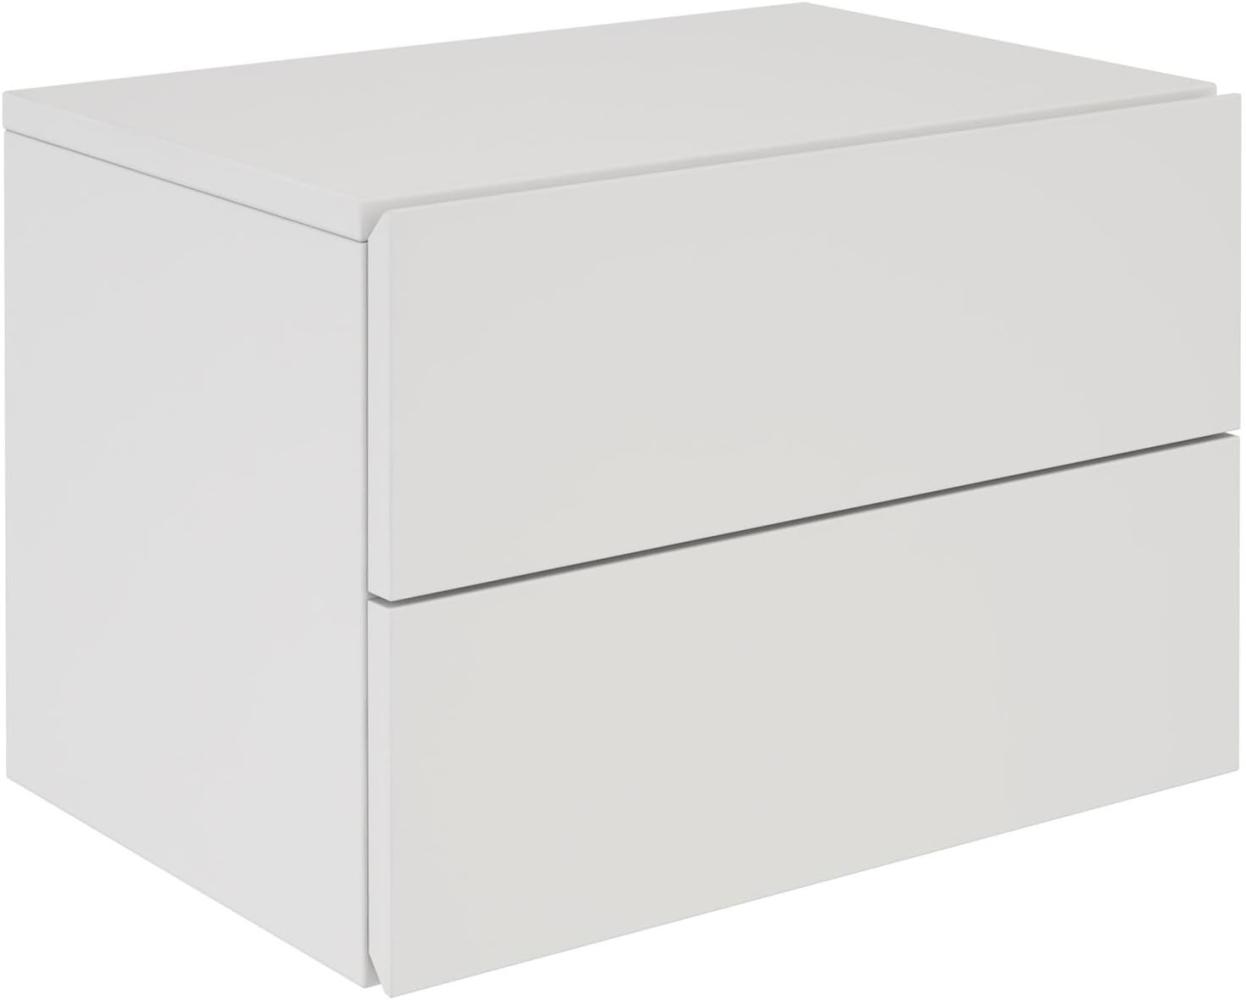 CARO-Möbel Nachtkommode ANNI Nachttisch Nachtschrank hängend Wandregal mit 2 Schubladen in weiß Bild 1